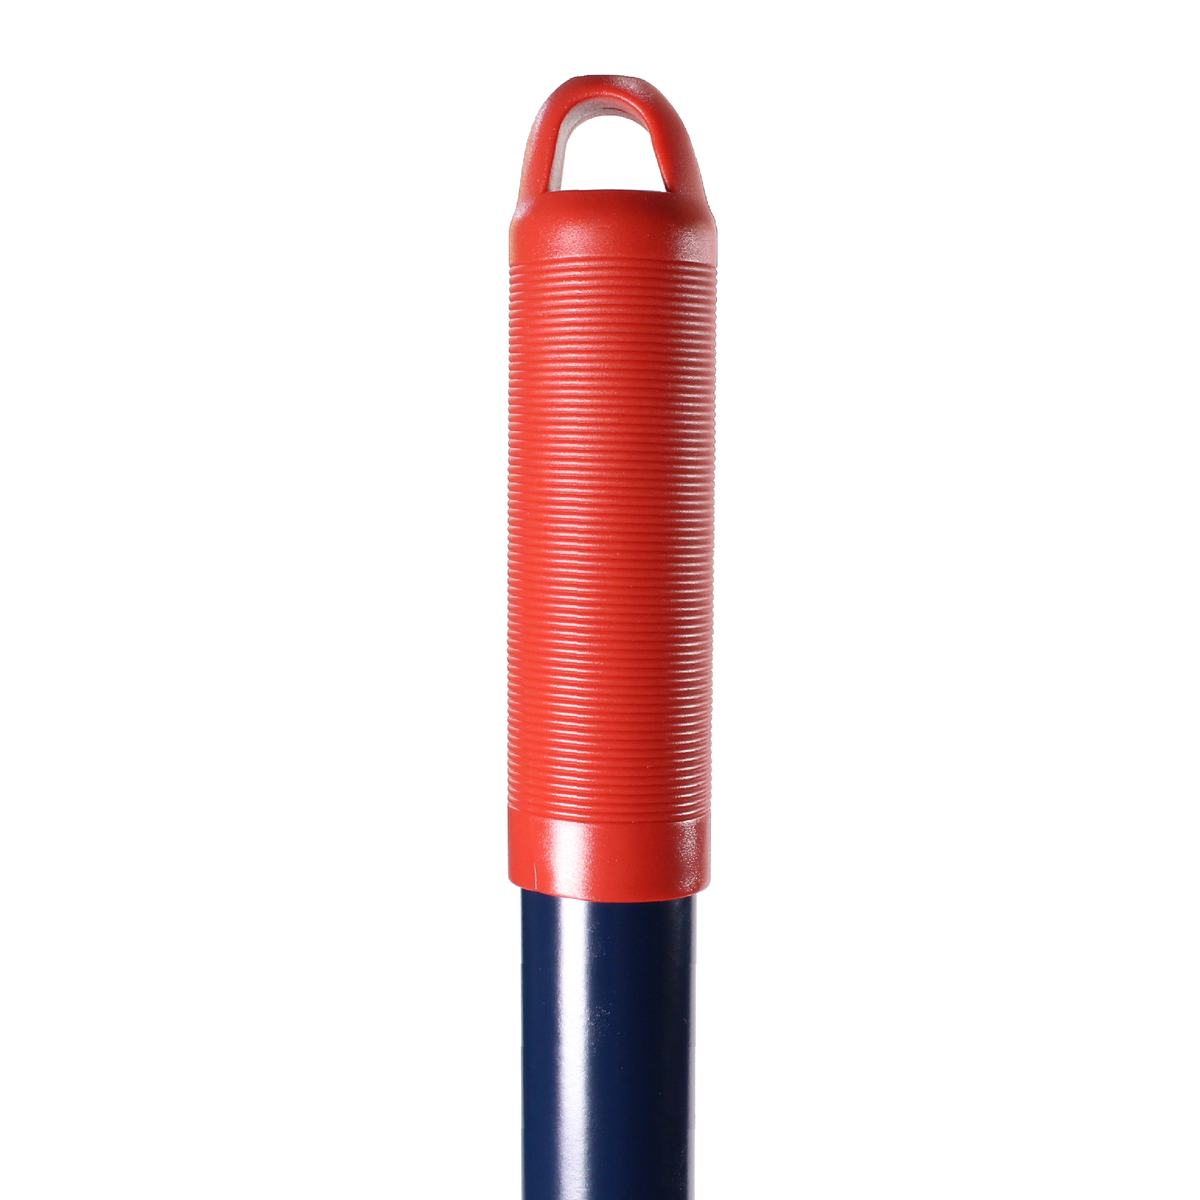 HAUSHALT Universalrechen R107MS, 140 cm, mit Metall Stiel, Blau, mit gummierten ergonomischen und rutschfesten Griff in rot ( 000051310974 ) - Toolbrothers